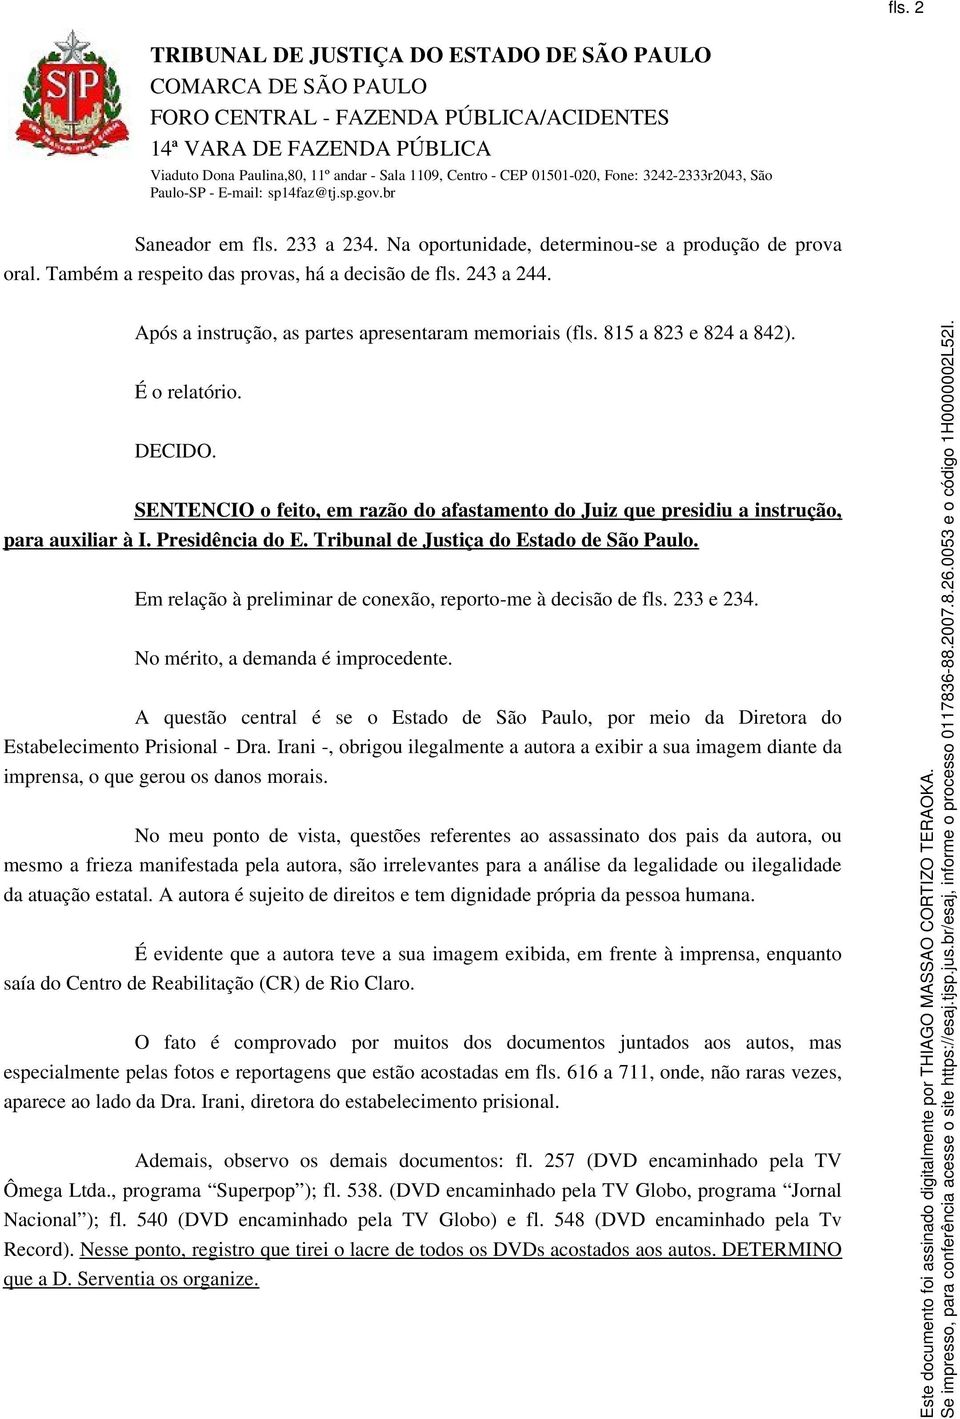 Presidência do E. Tribunal de Justiça do Estado de São Paulo. Em relação à preliminar de conexão, reporto-me à decisão de fls. 233 e 234. No mérito, a demanda é improcedente.